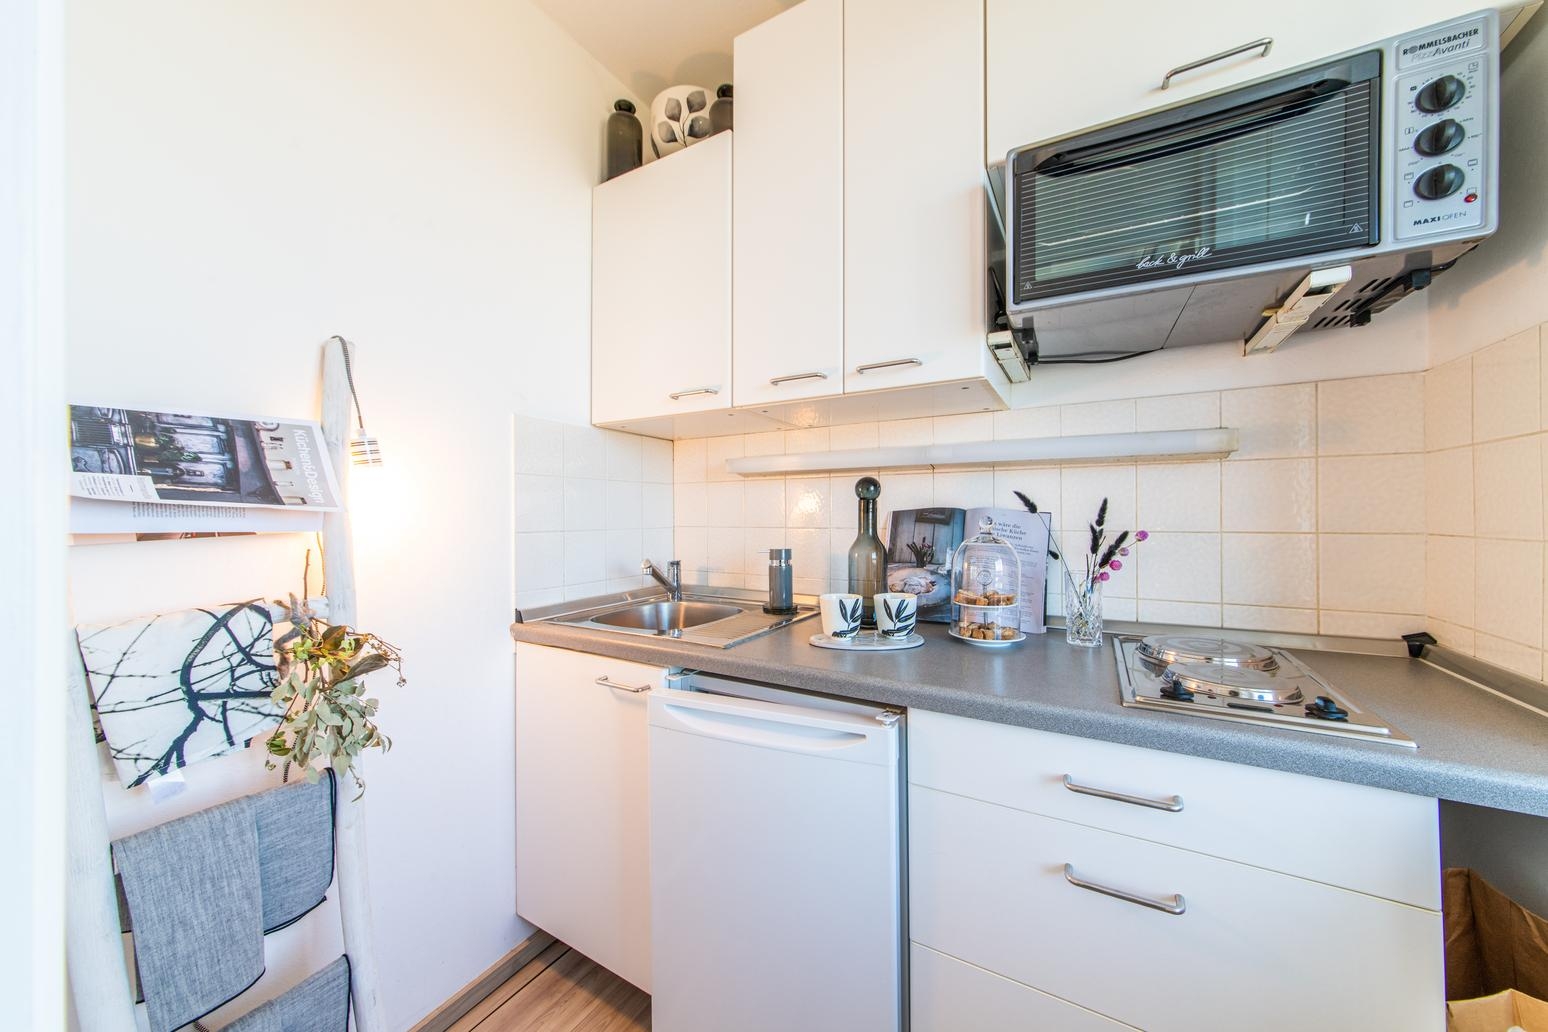 MINI-Apartment mit Mini-Küche - Deko macht "mehr" daraus. #homestaging #dekotipp #styling